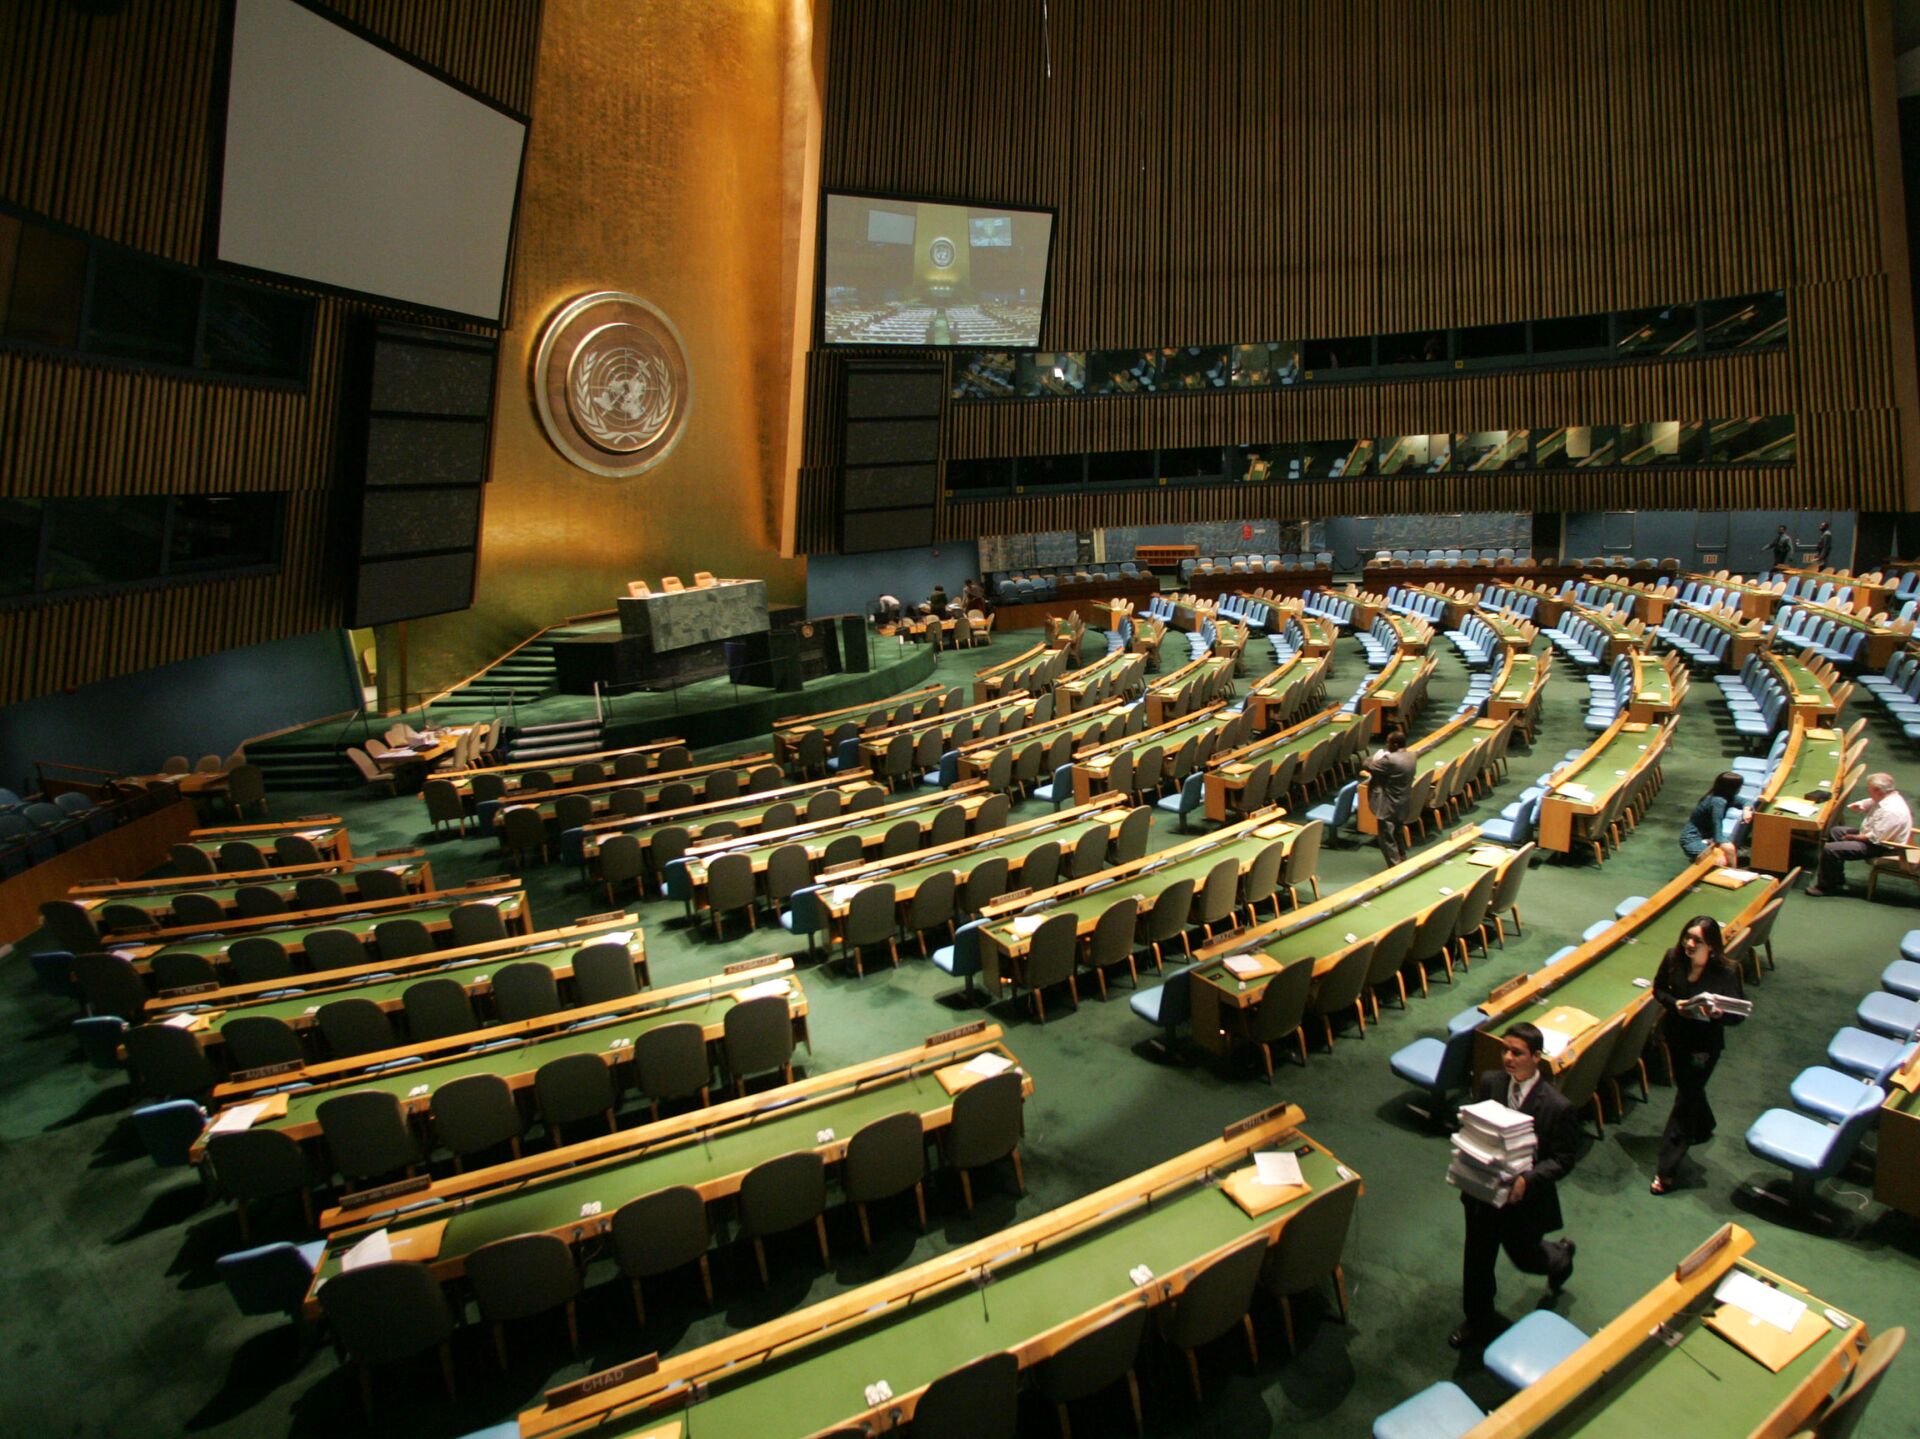 Комиссия по правам человека оон. Генеральная Ассамблея ООН (га ООН). Зал Генеральной Ассамблеи ООН. Зал заседания Генассамблеи ООН трибуна. Генеральная Ассамблея ООН Нью-Йорк.